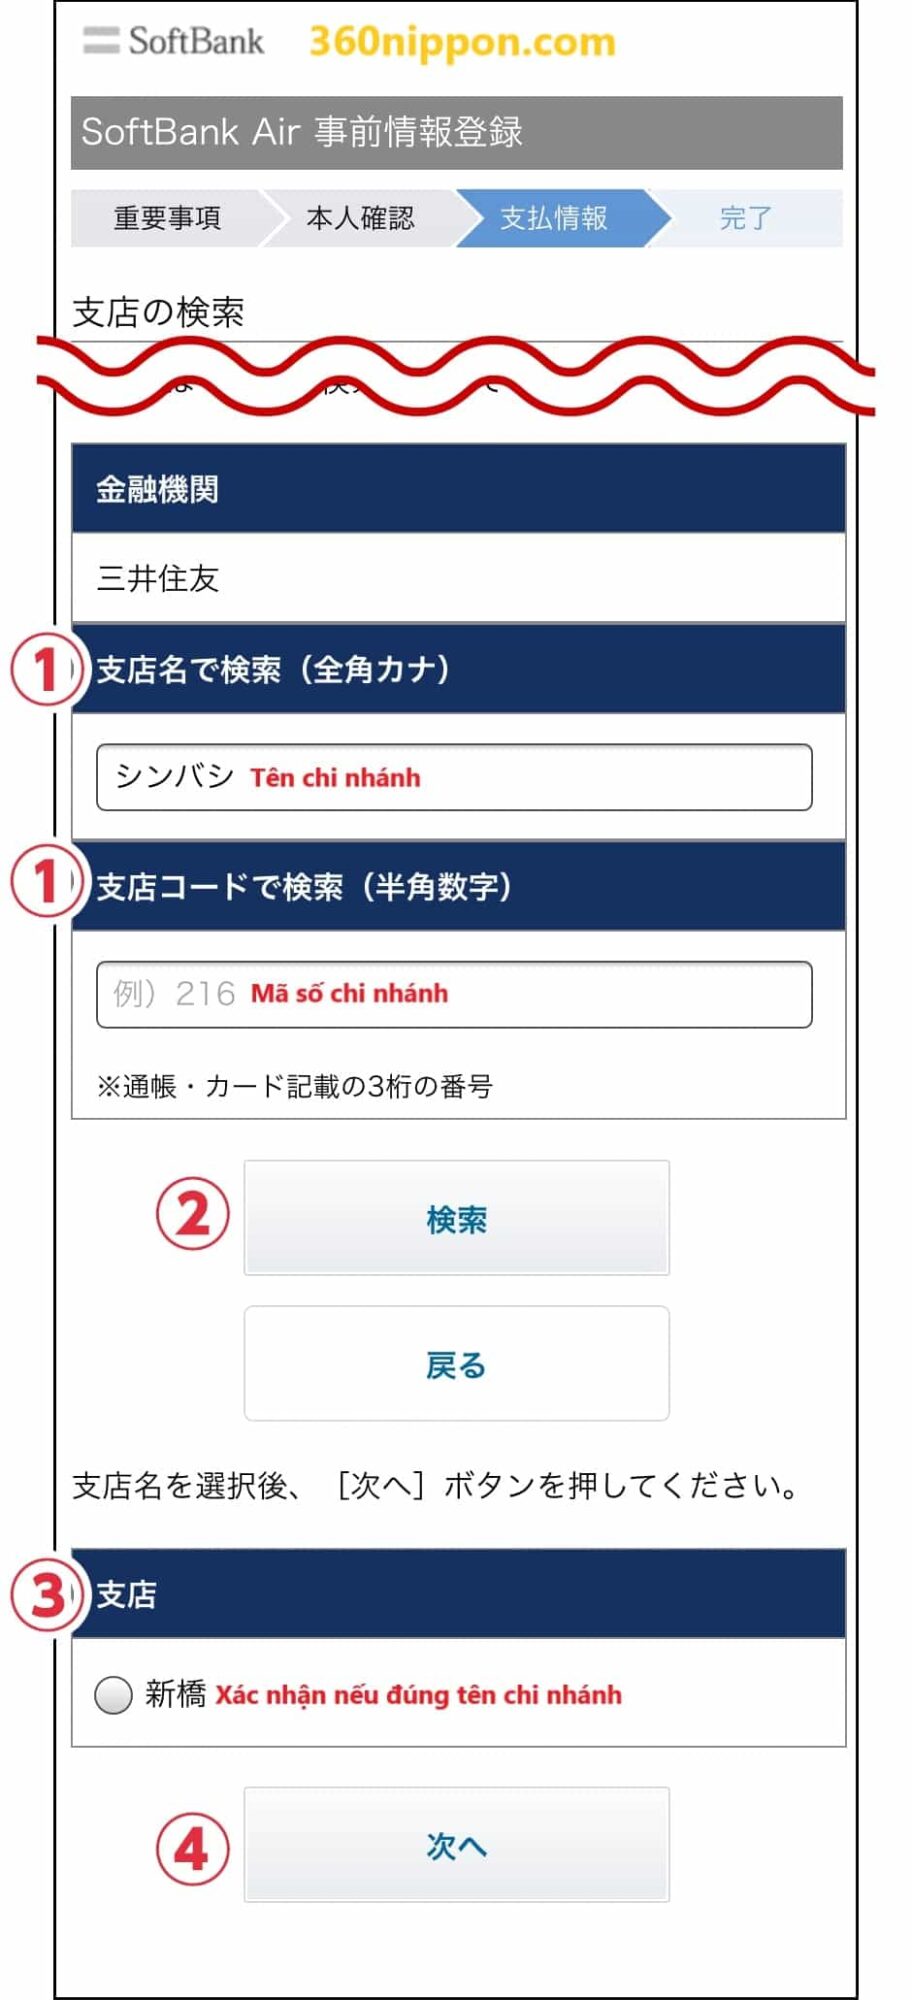 Hướng dẫn đăng ký wifi cố định softbank ở Nhật 148